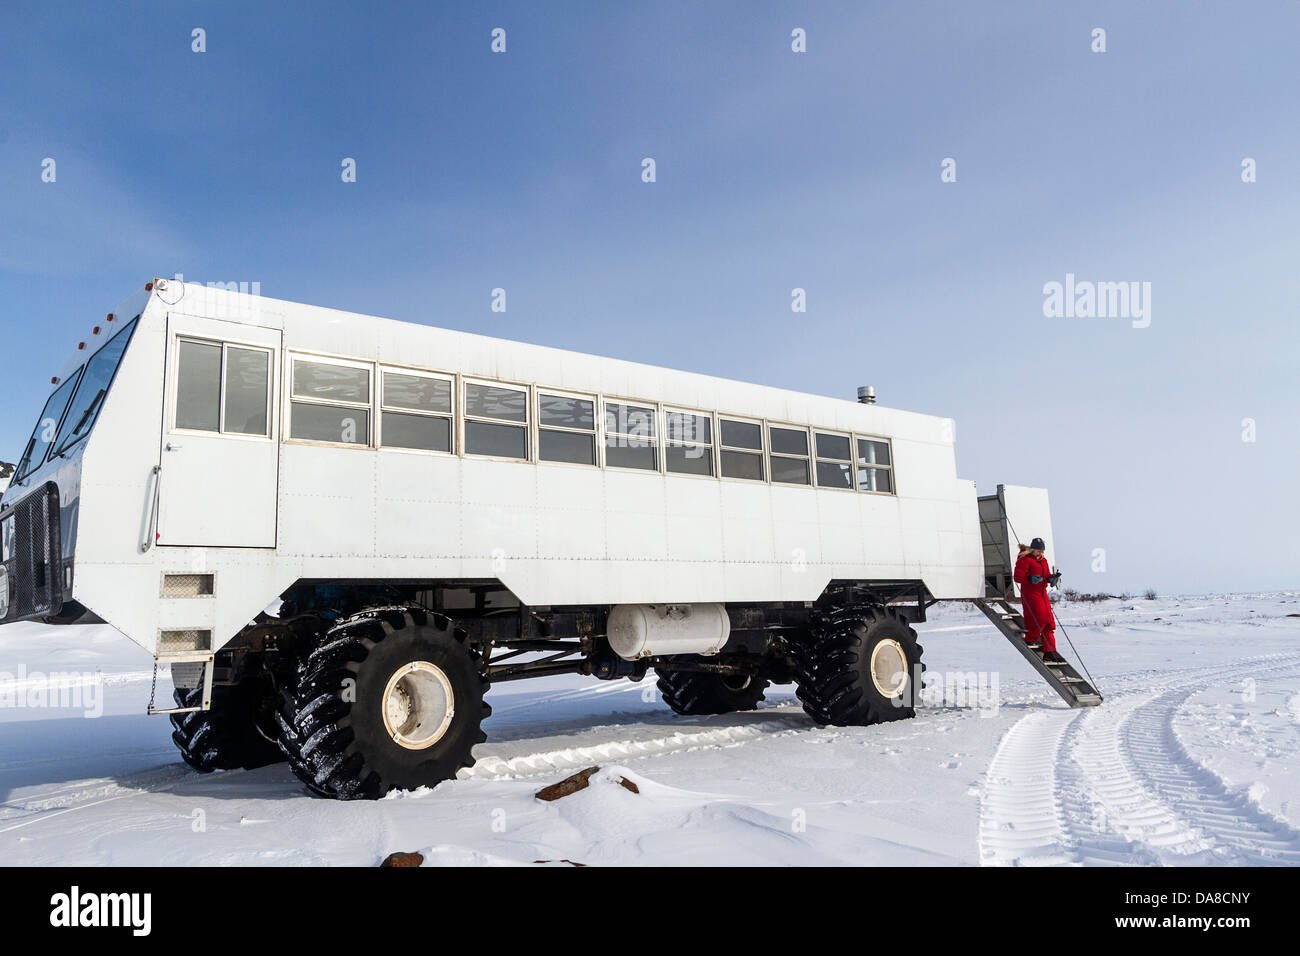 Mujer visitante abandona las fronteras Norte tundra buggy para conocer de primera mano la tundra congelada en invierno Foto de stock